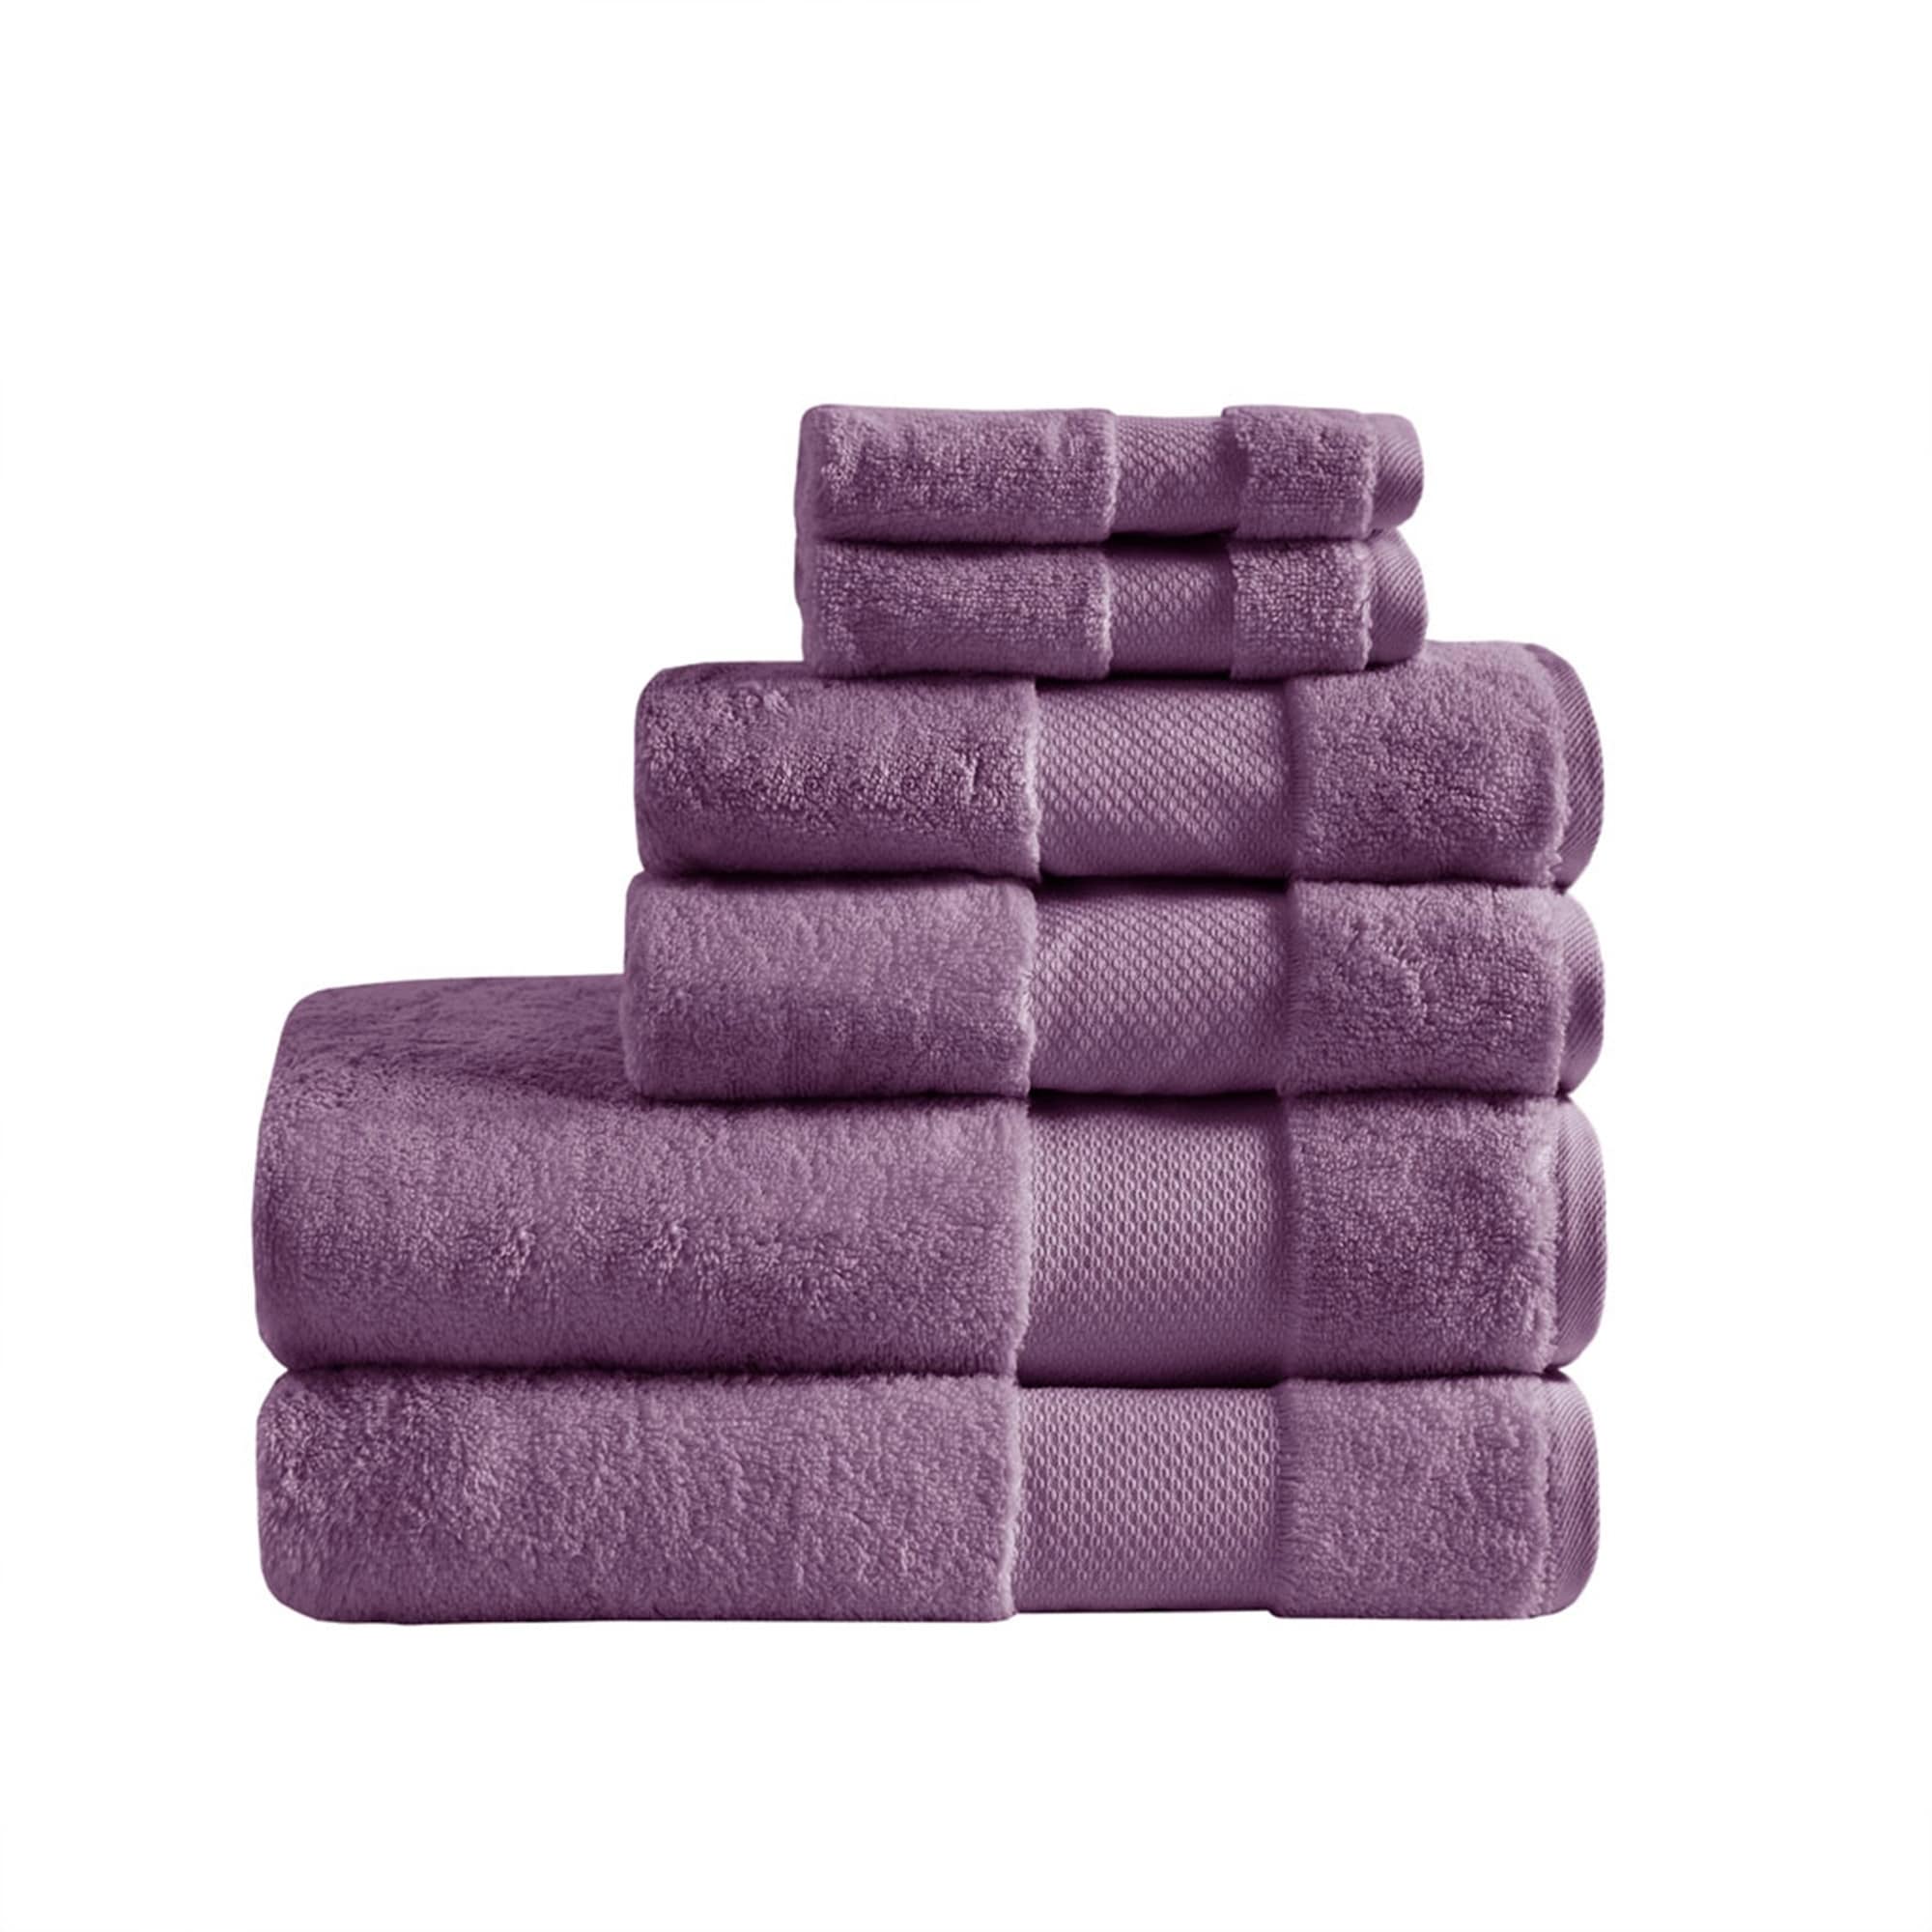 https://ak1.ostkcdn.com/images/products/is/images/direct/104af6de0ea5c2b853b4824570715ad84ff3146d/Madison-Park-Signature-Turkish-Cotton-6-Piece-Bath-Towel-Set.jpg